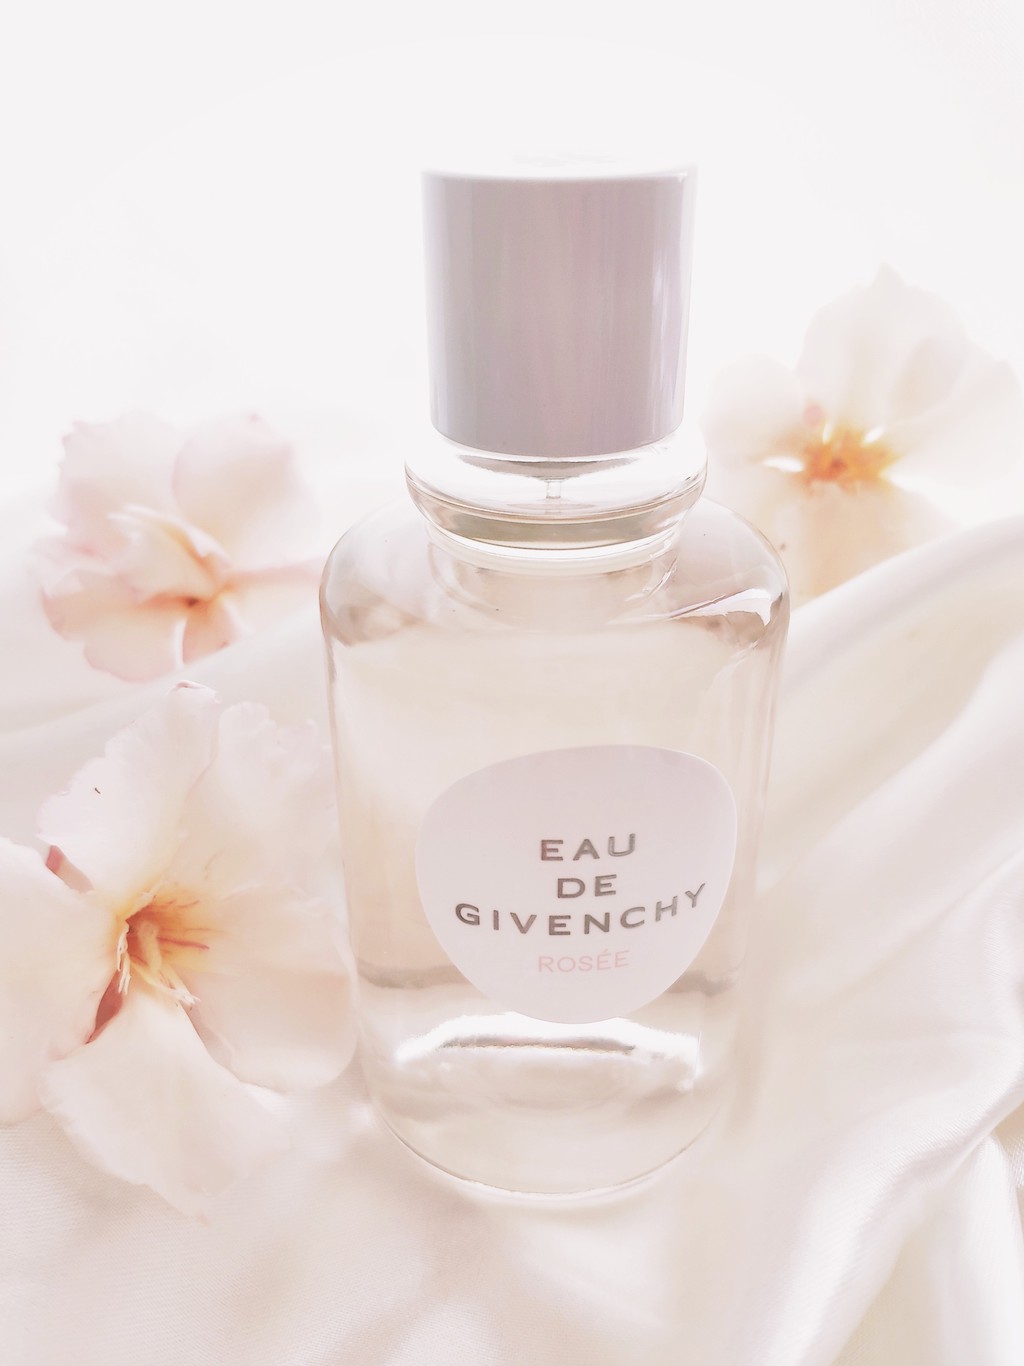 parfum-eau-de-givenchy-rosee-avis-test-blog-voyage-en-beaute-1